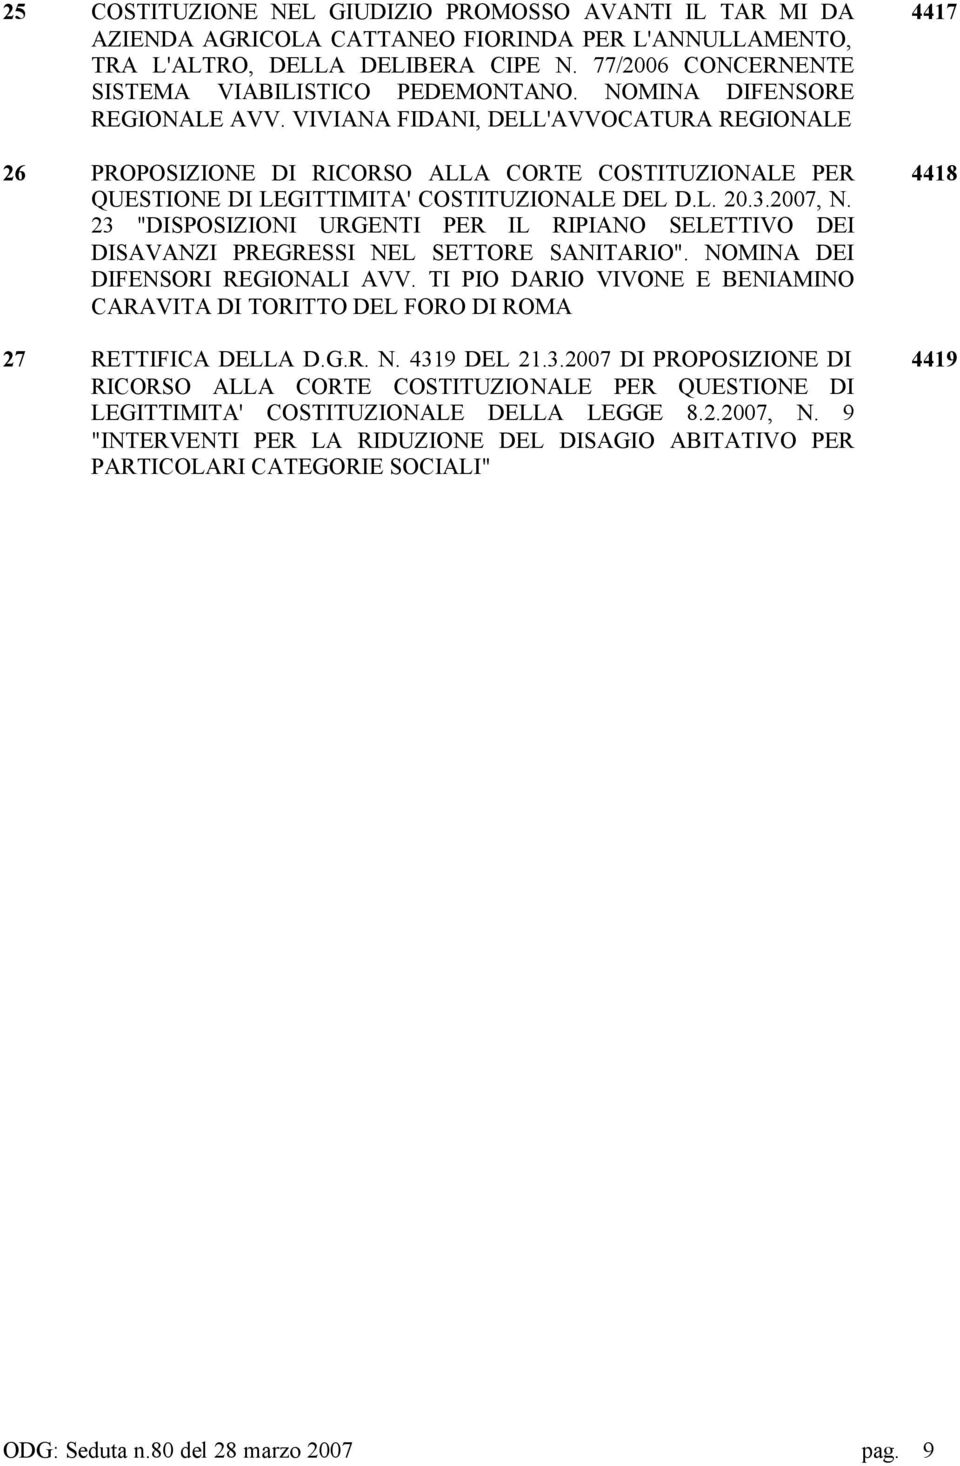 VIVIANA FIDANI, DELL'AVVOCATURA REGIONALE 26 PROPOSIZIONE DI RICORSO ALLA CORTE COSTITUZIONALE PER QUESTIONE DI LEGITTIMITA' COSTITUZIONALE DEL D.L. 20.3.2007, N.